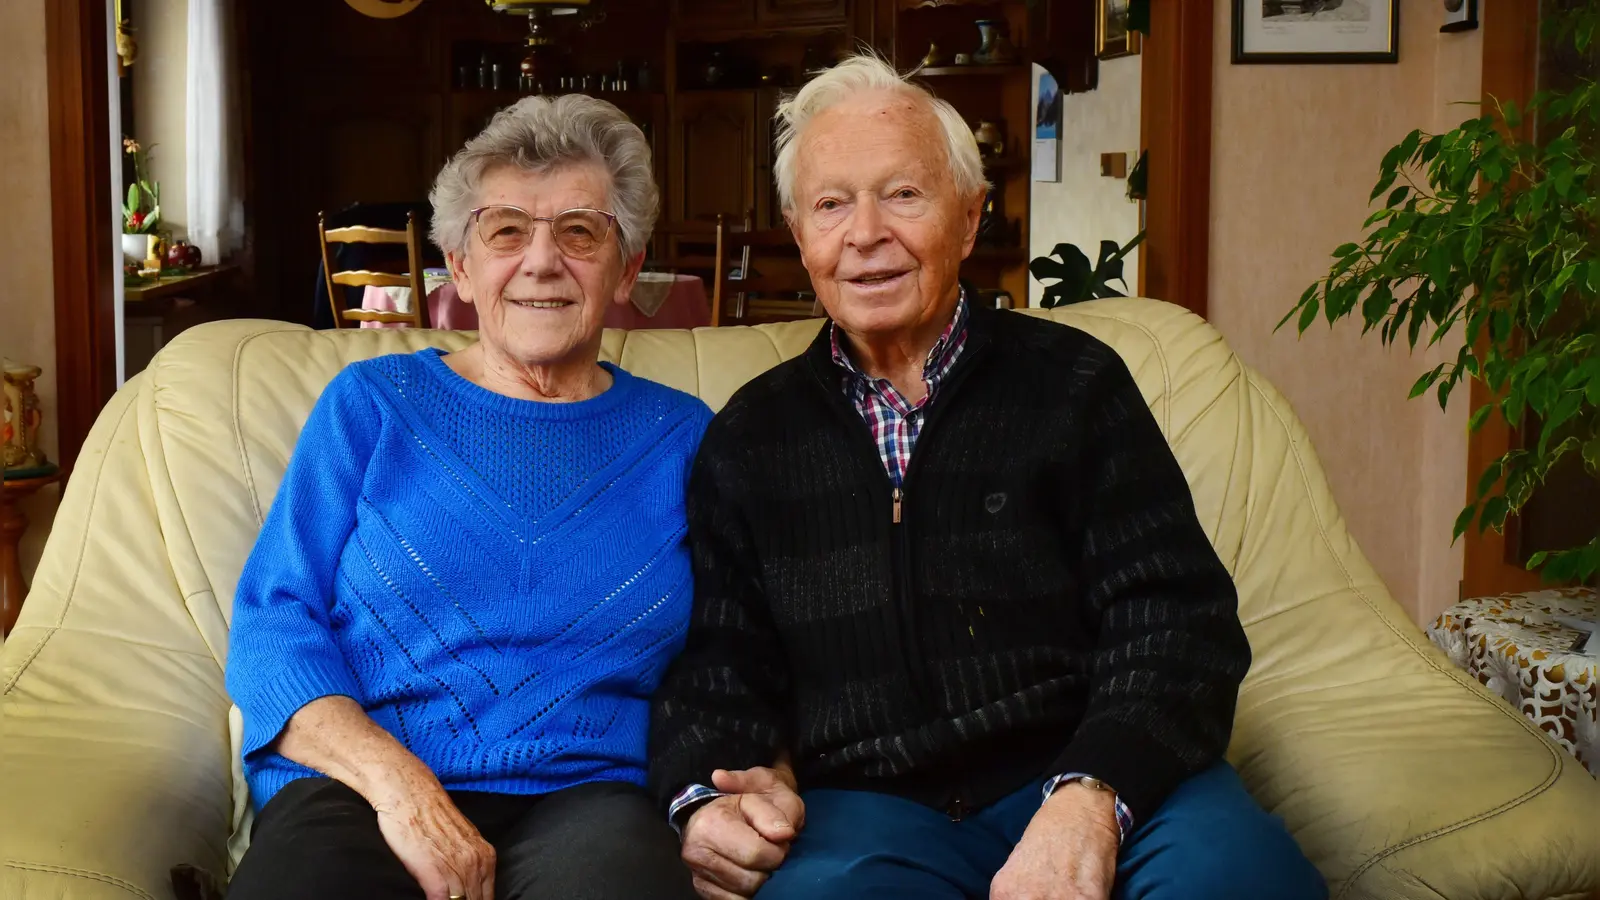 Der 86-jährige Ewald Seifert und seine Frau Ingeborg (84) konnten ihre Eiserne Hochzeit feiern. Die beiden wünschen sich noch viele gemeinsame glückliche Jahre. (Foto: Irmeli Pohl)